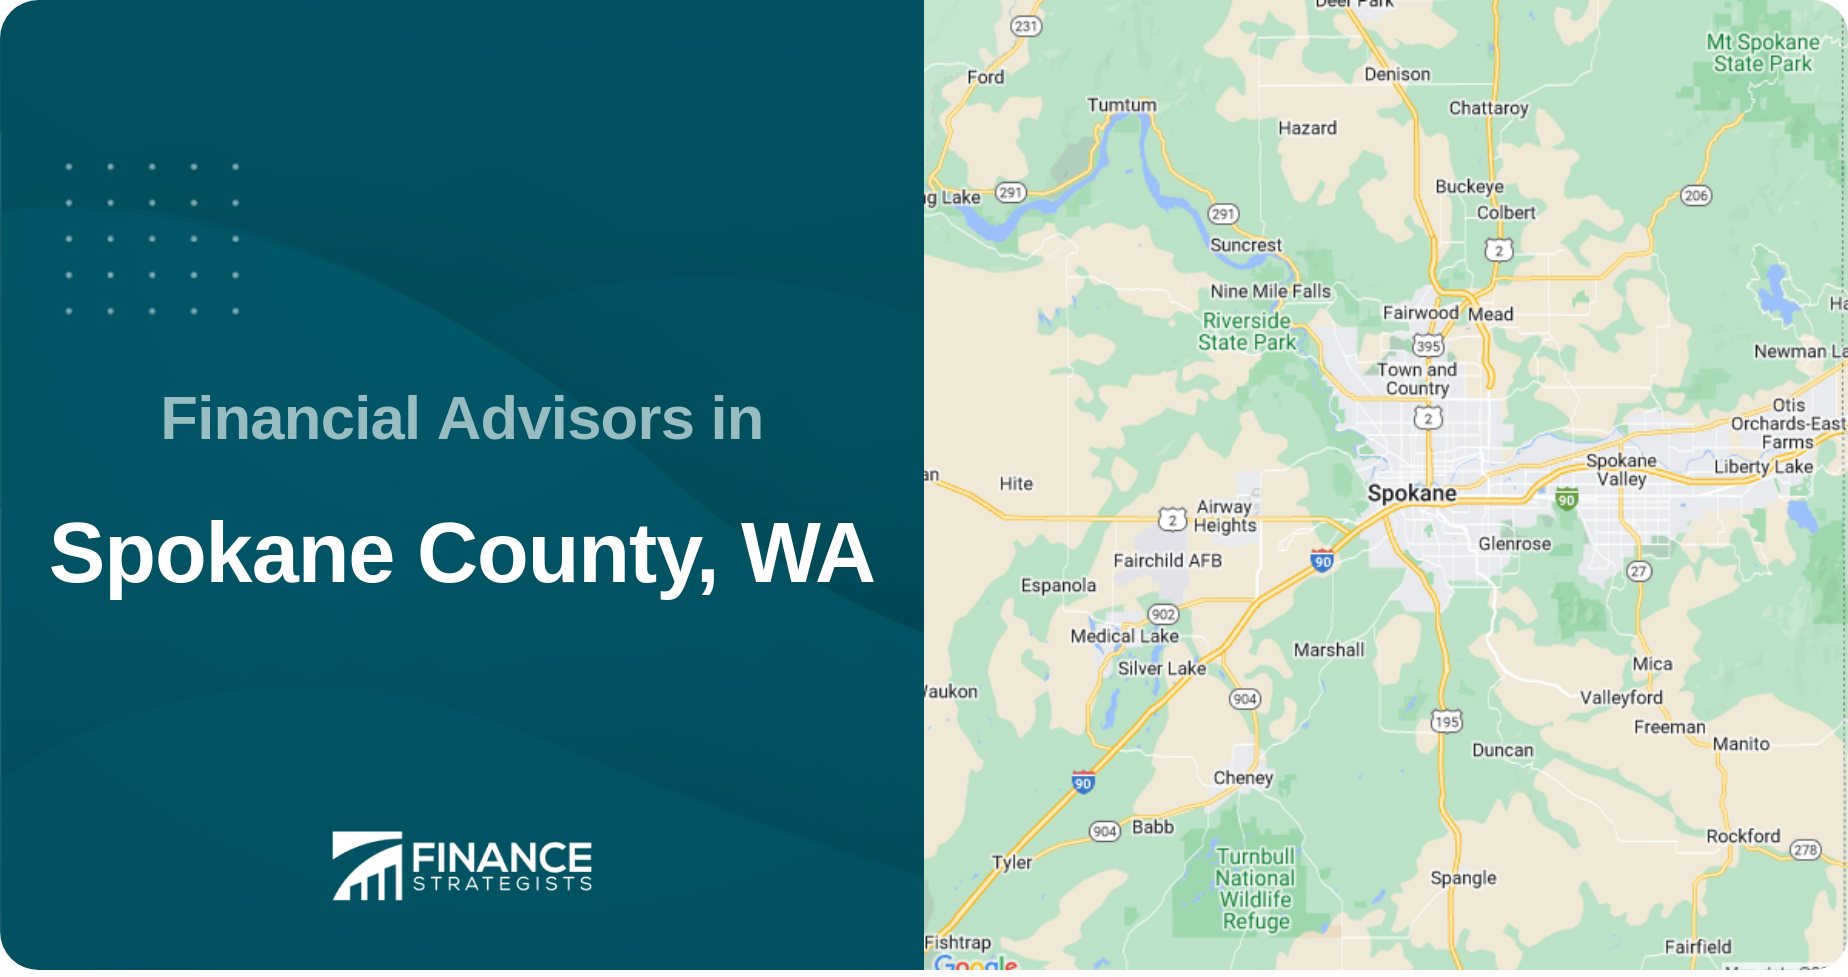 Financial Advisors in Spokane County, WA